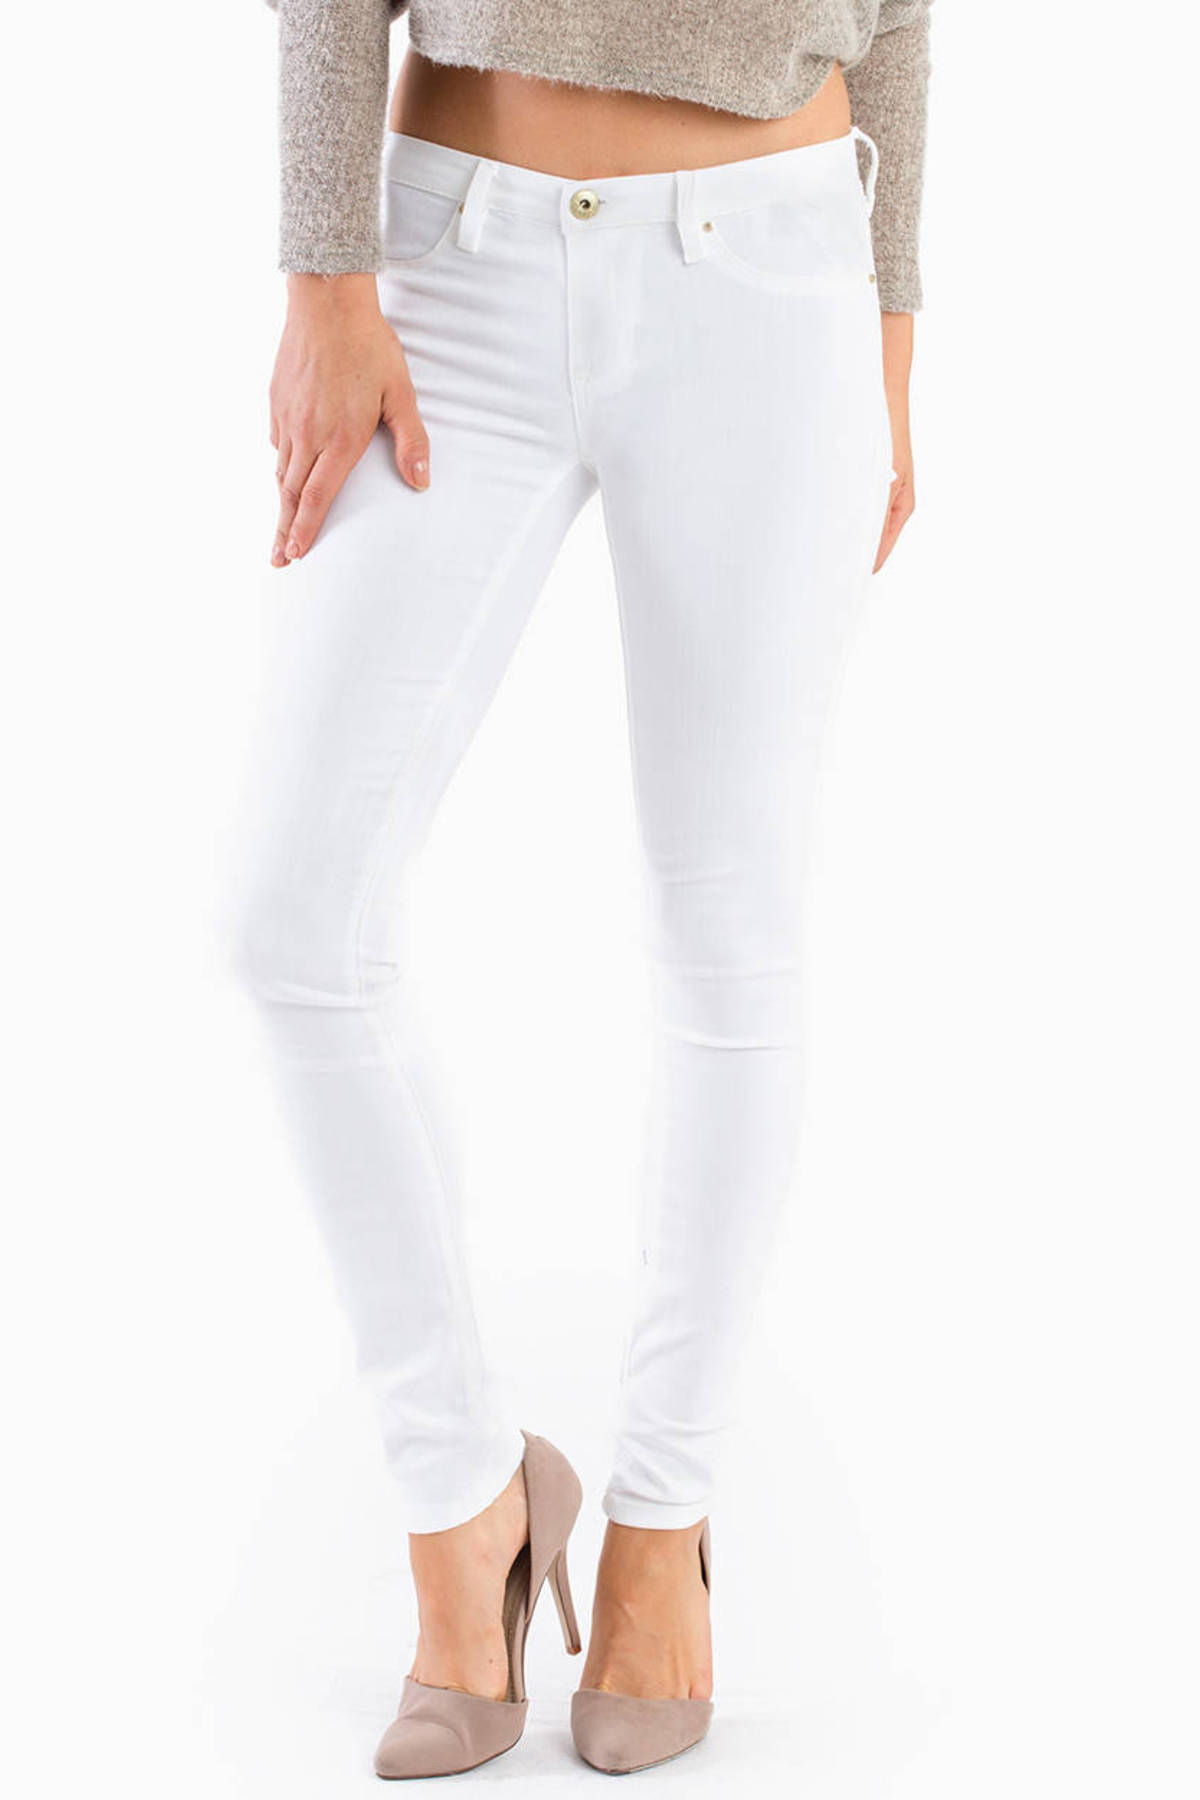 White Lines Skinny Jeans in White - $36 | Tobi US